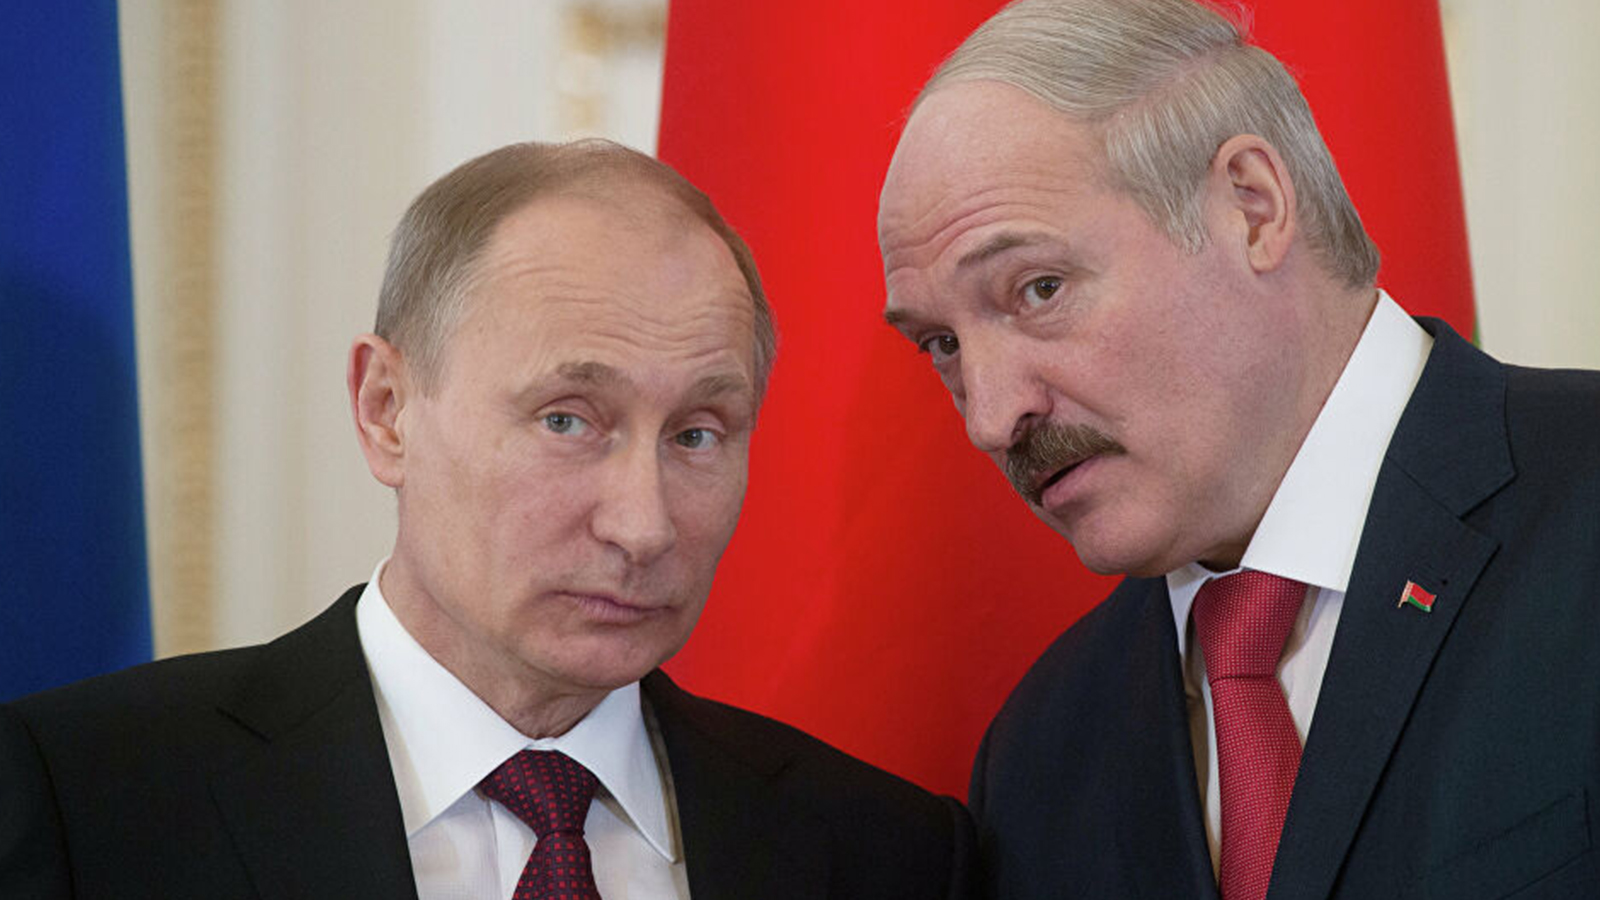 Belarus’taki otokratik rejim nasıl çöküşün eşiğine geldi?